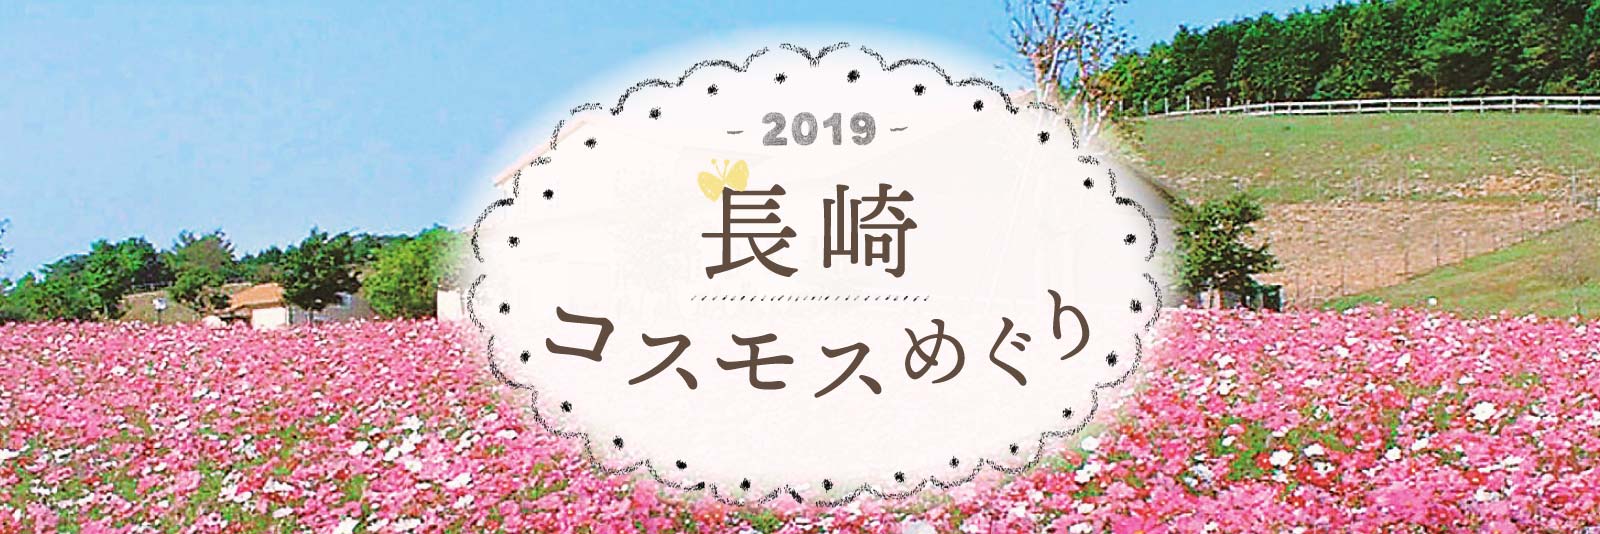 2019長崎コスモス特集 ながさきプレスwebマガジン 長崎のタウン情報誌公式サイト